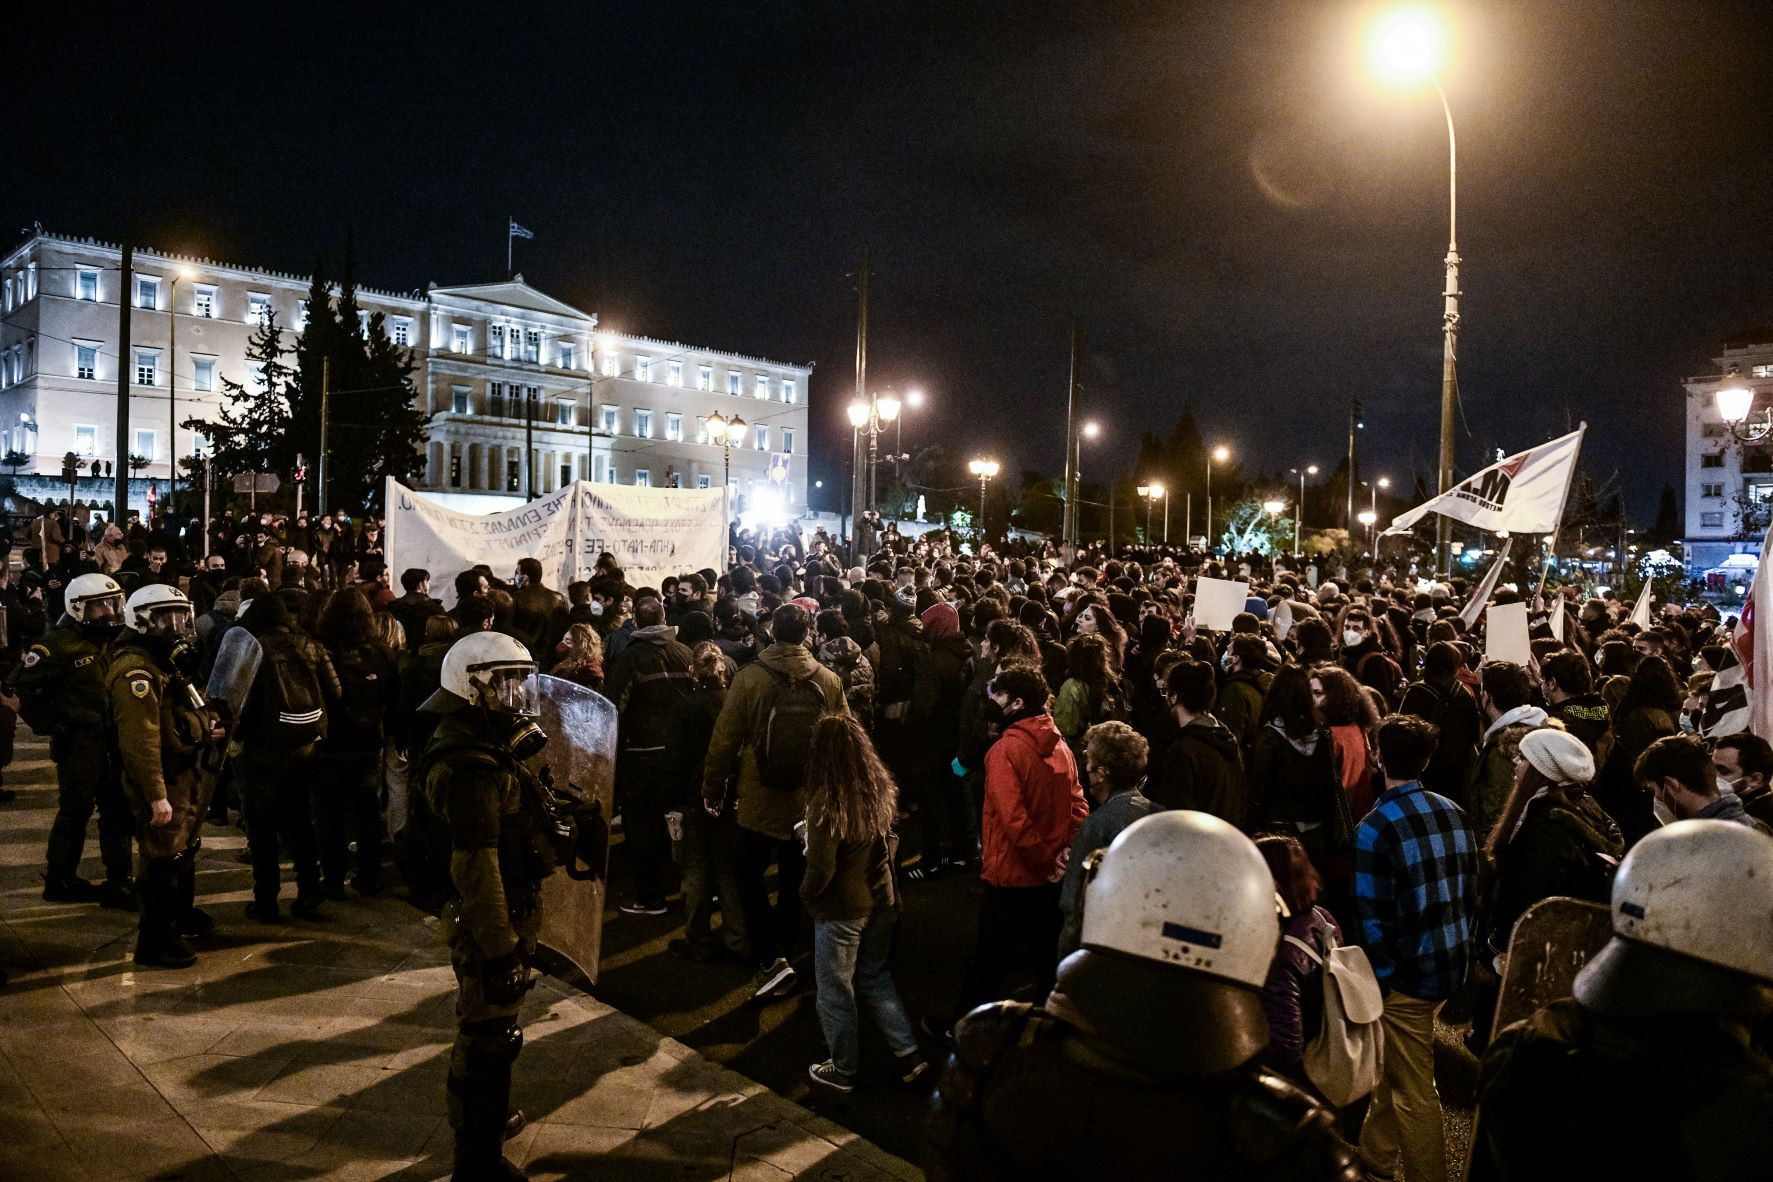 Μαζική αντιπολεμική και αντιιμπεριαλιστική διαδήλωση στο κέντρο της Αθήνας [ΦΩΤΟ